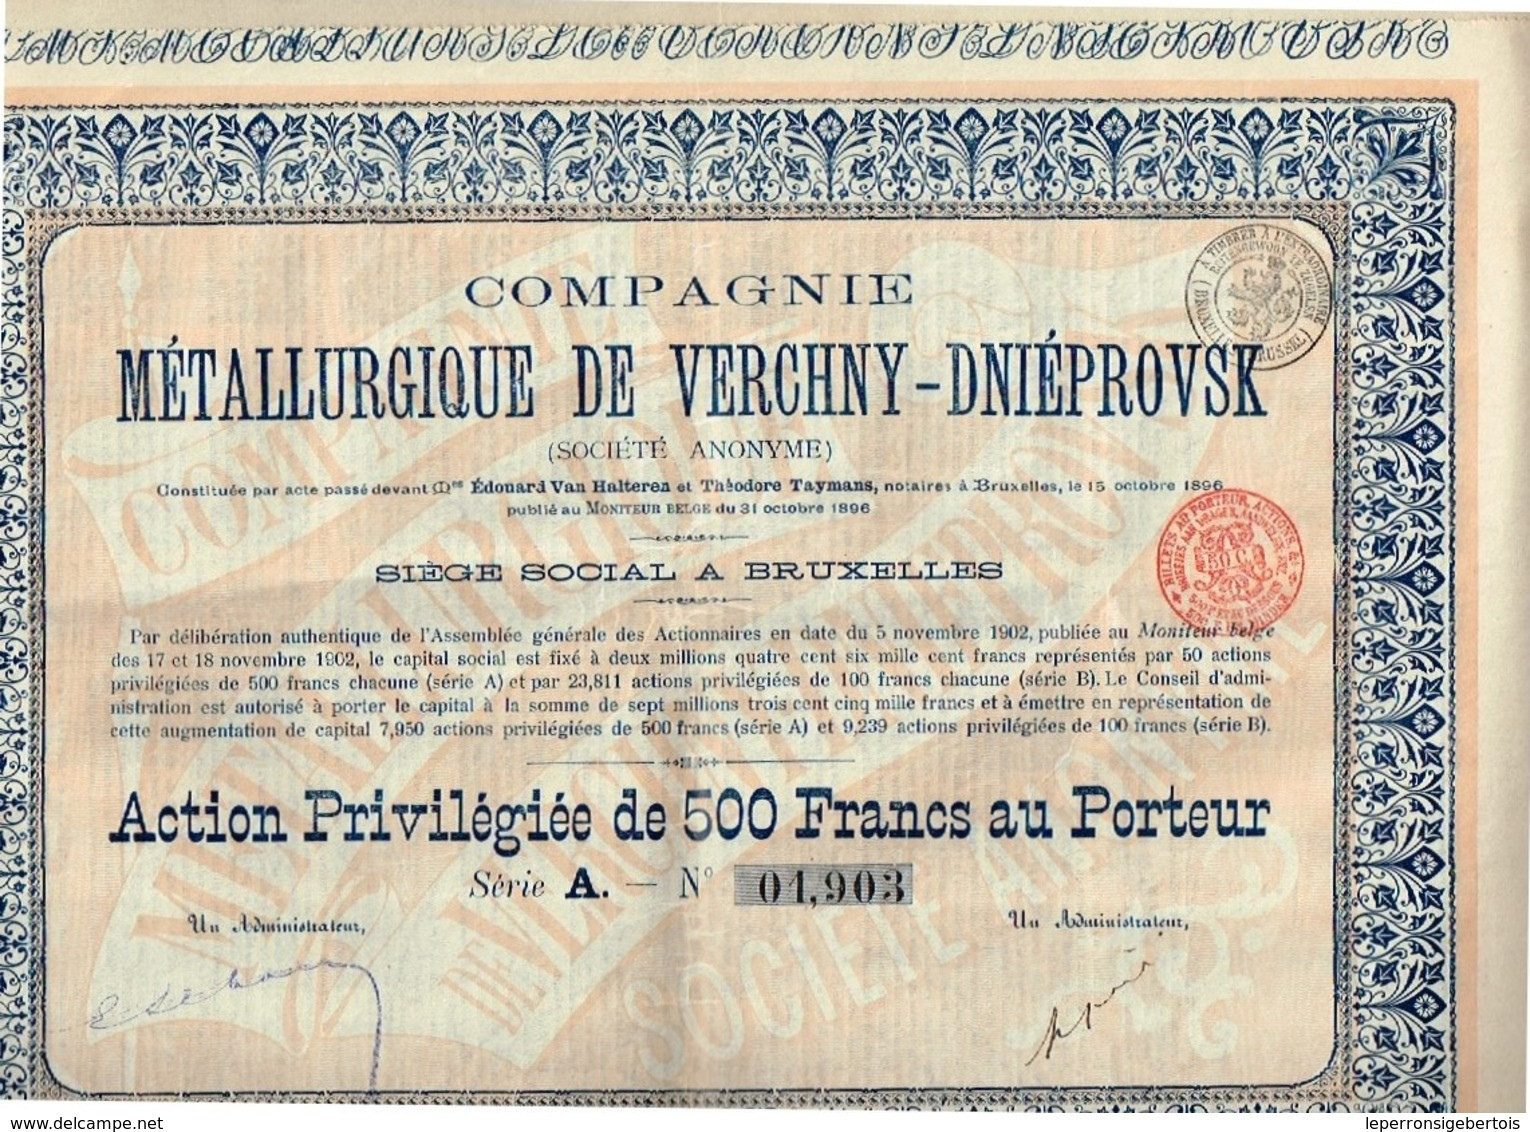 Action Ancienne - Compagnie Métallurgique De Verchny-Dniéprovsk - Titre De 1902 N° 01903 - Russie